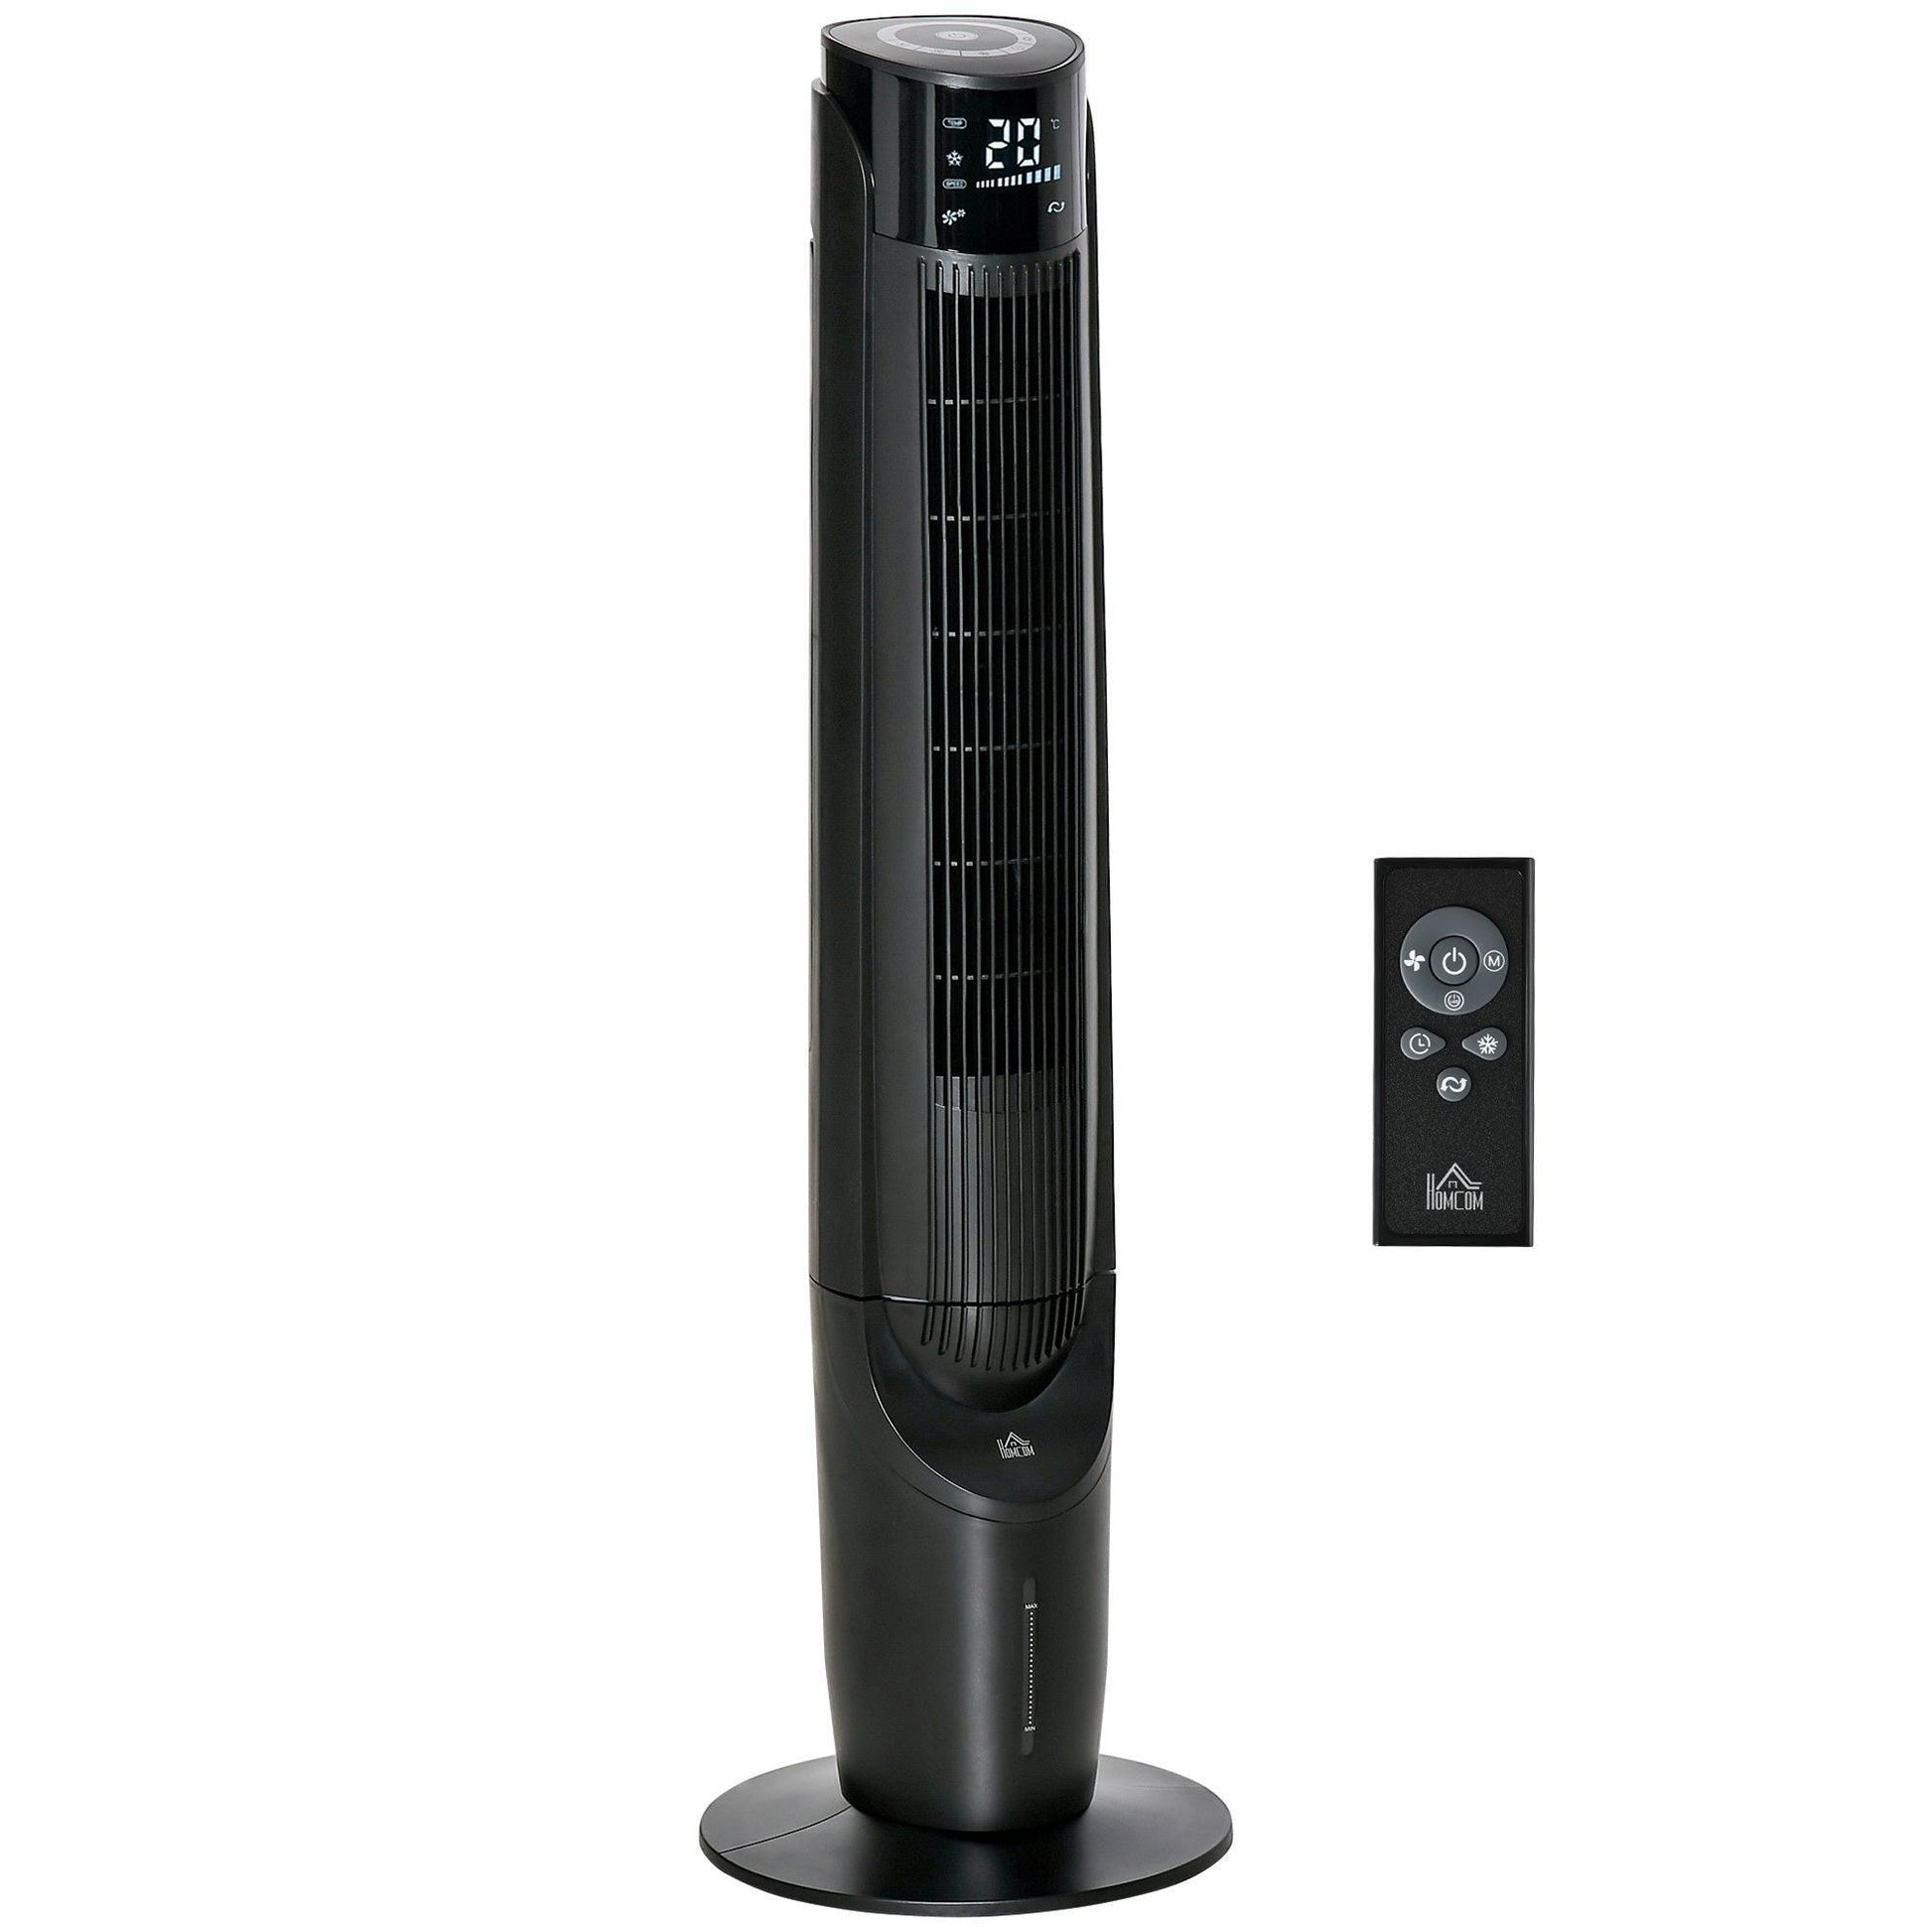 HOMCOM Cooling Tower Fan: 4 Modes, 3 Speeds - ALL4U RETAILER LTD